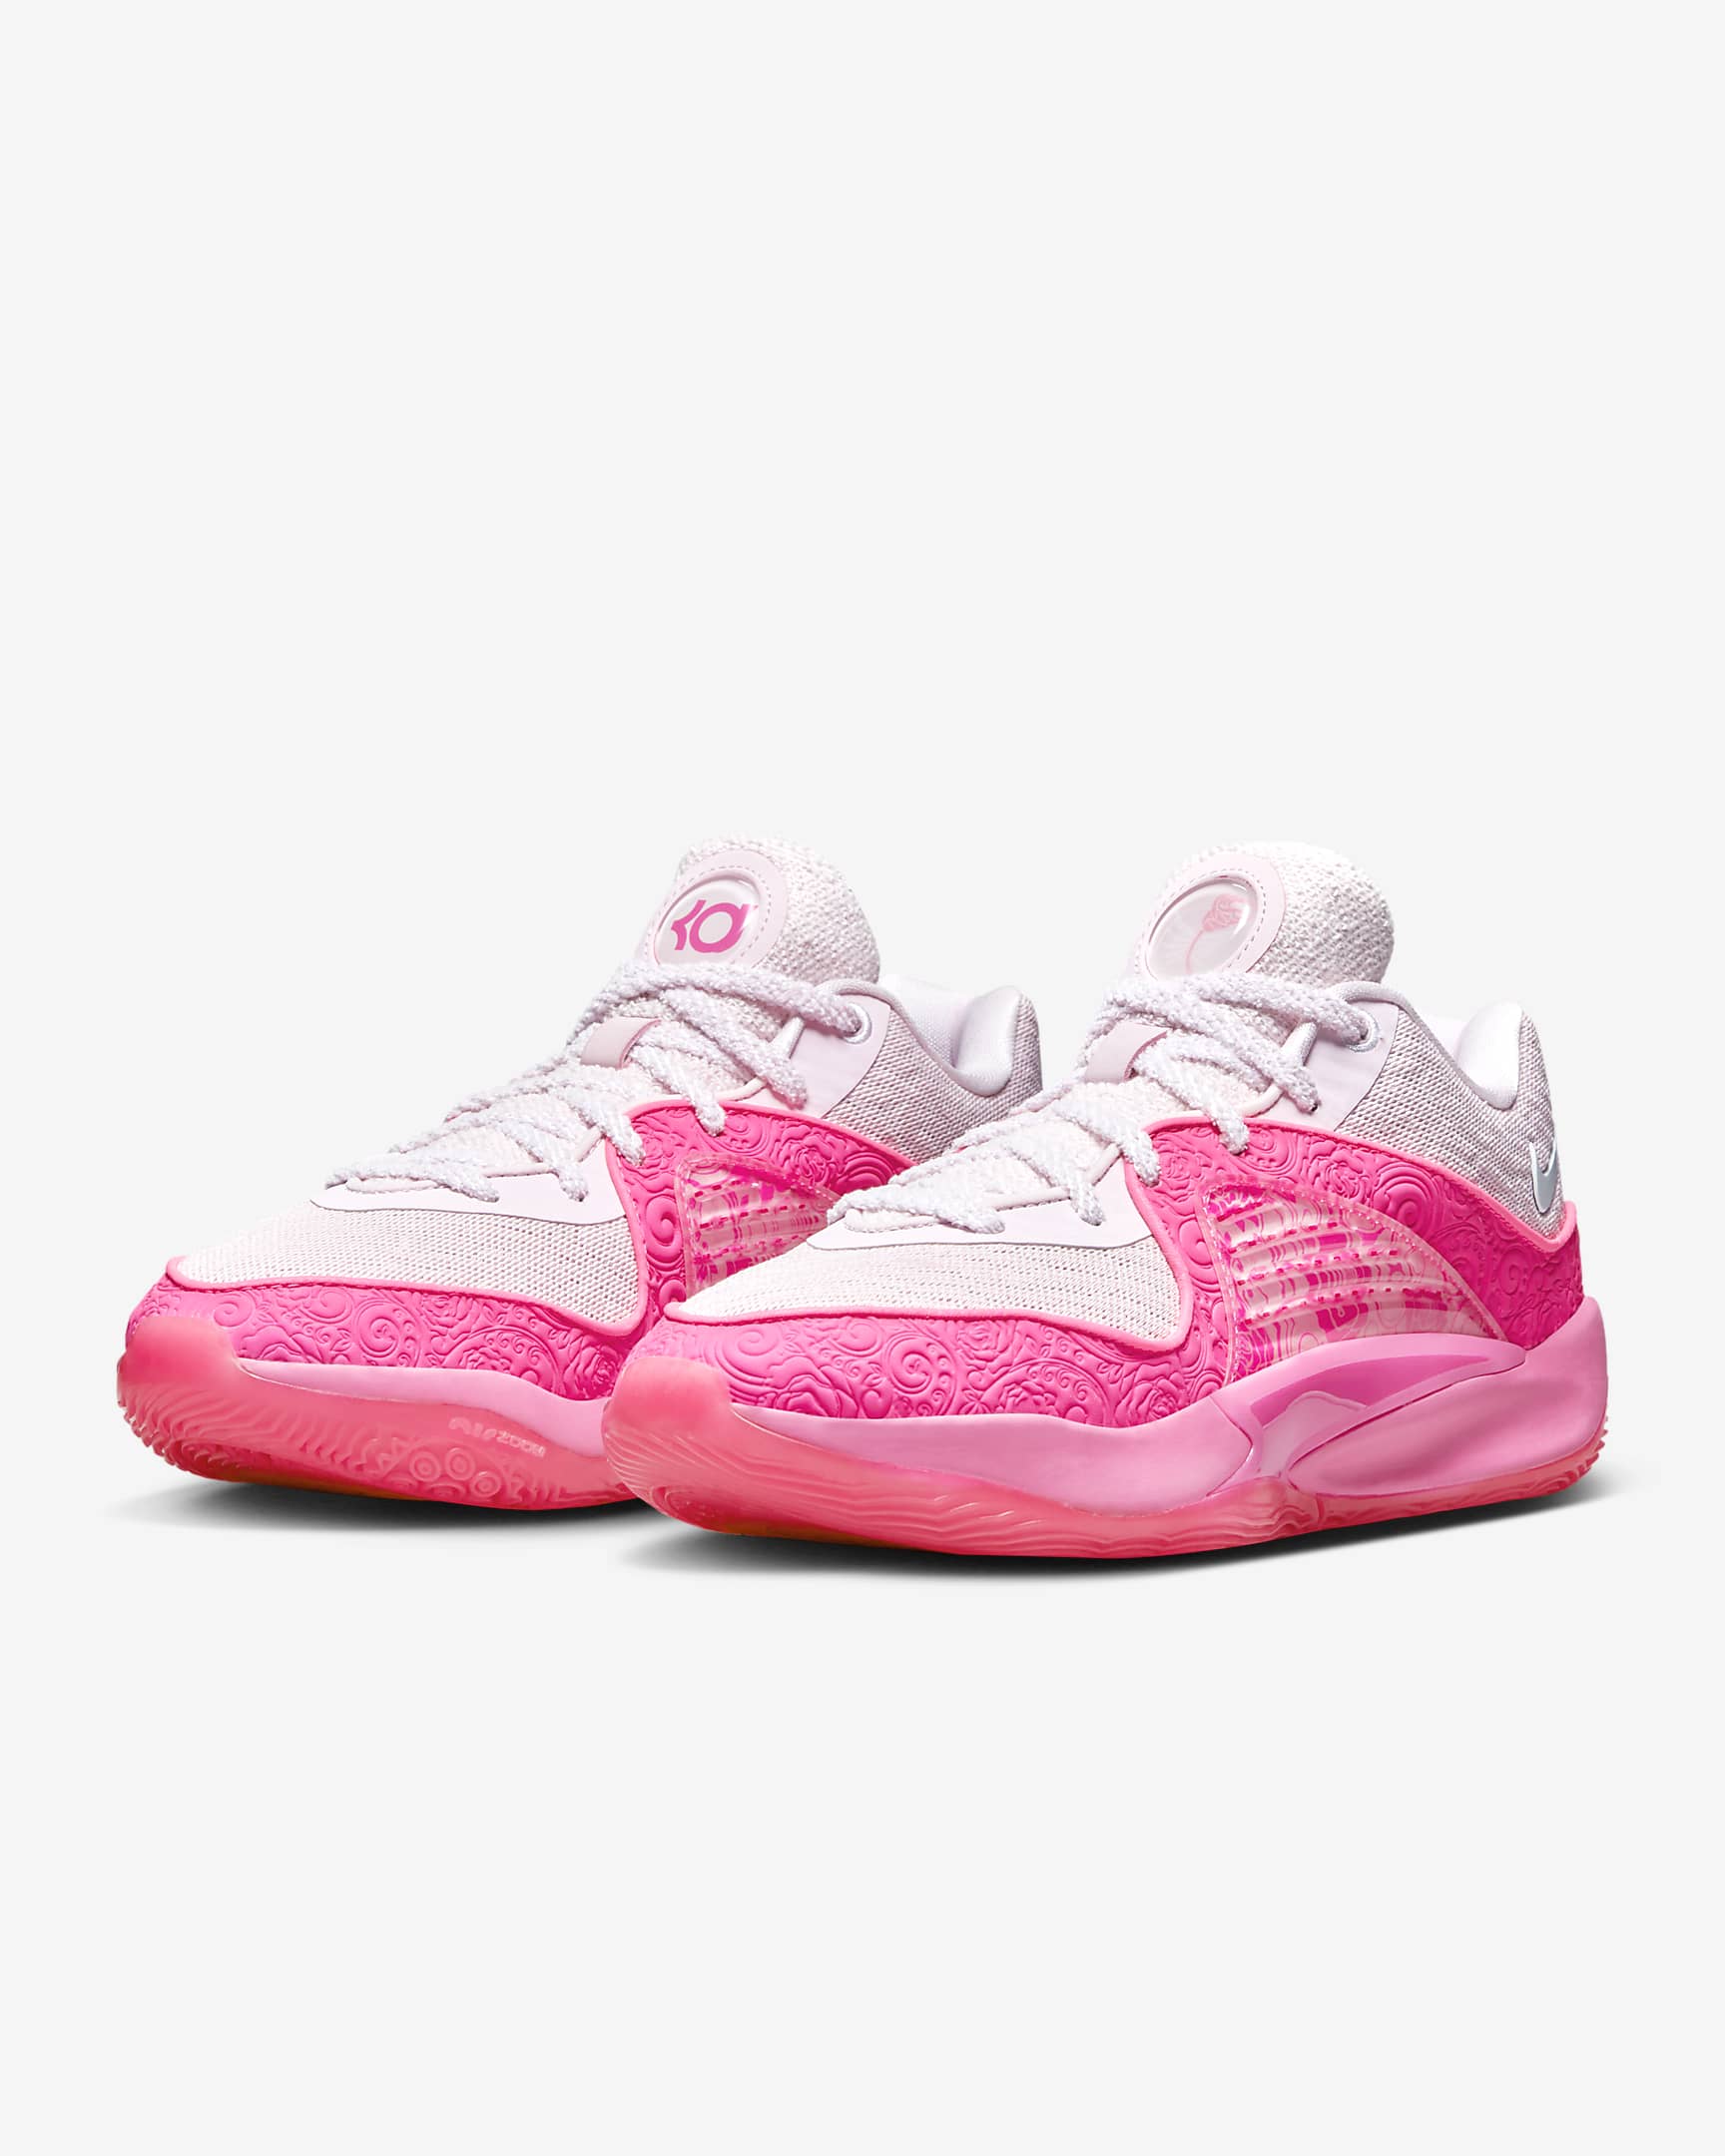 KD16 NRG EP Basketball Shoes. Nike PH